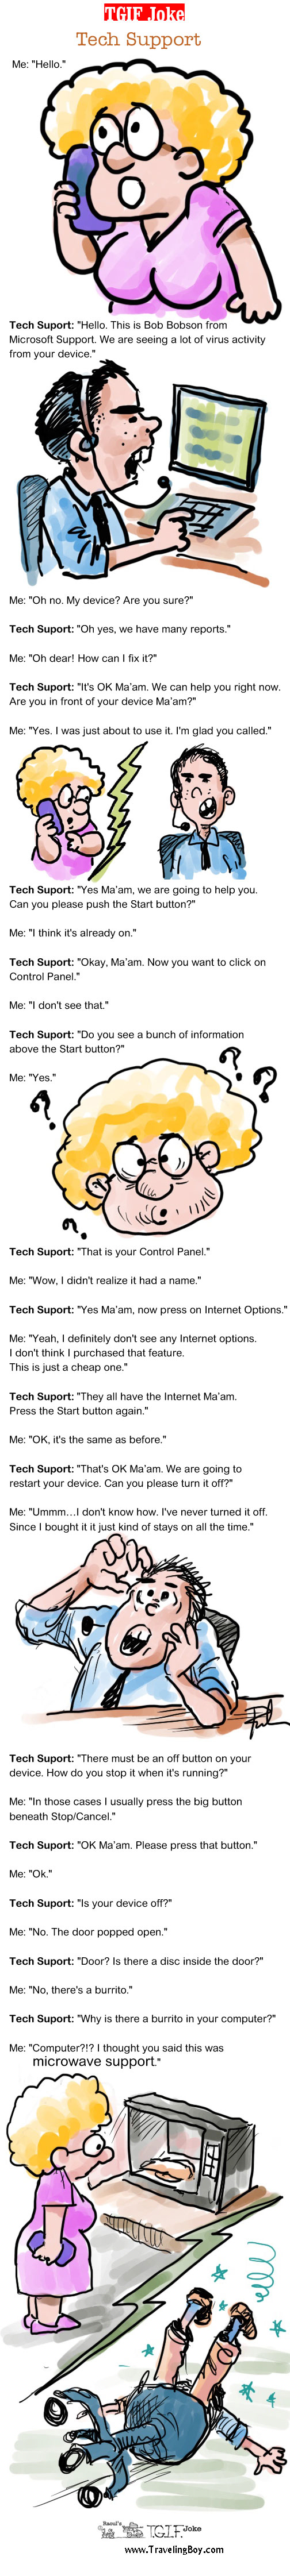 TGIF Joke of the Week: Tech Support 1